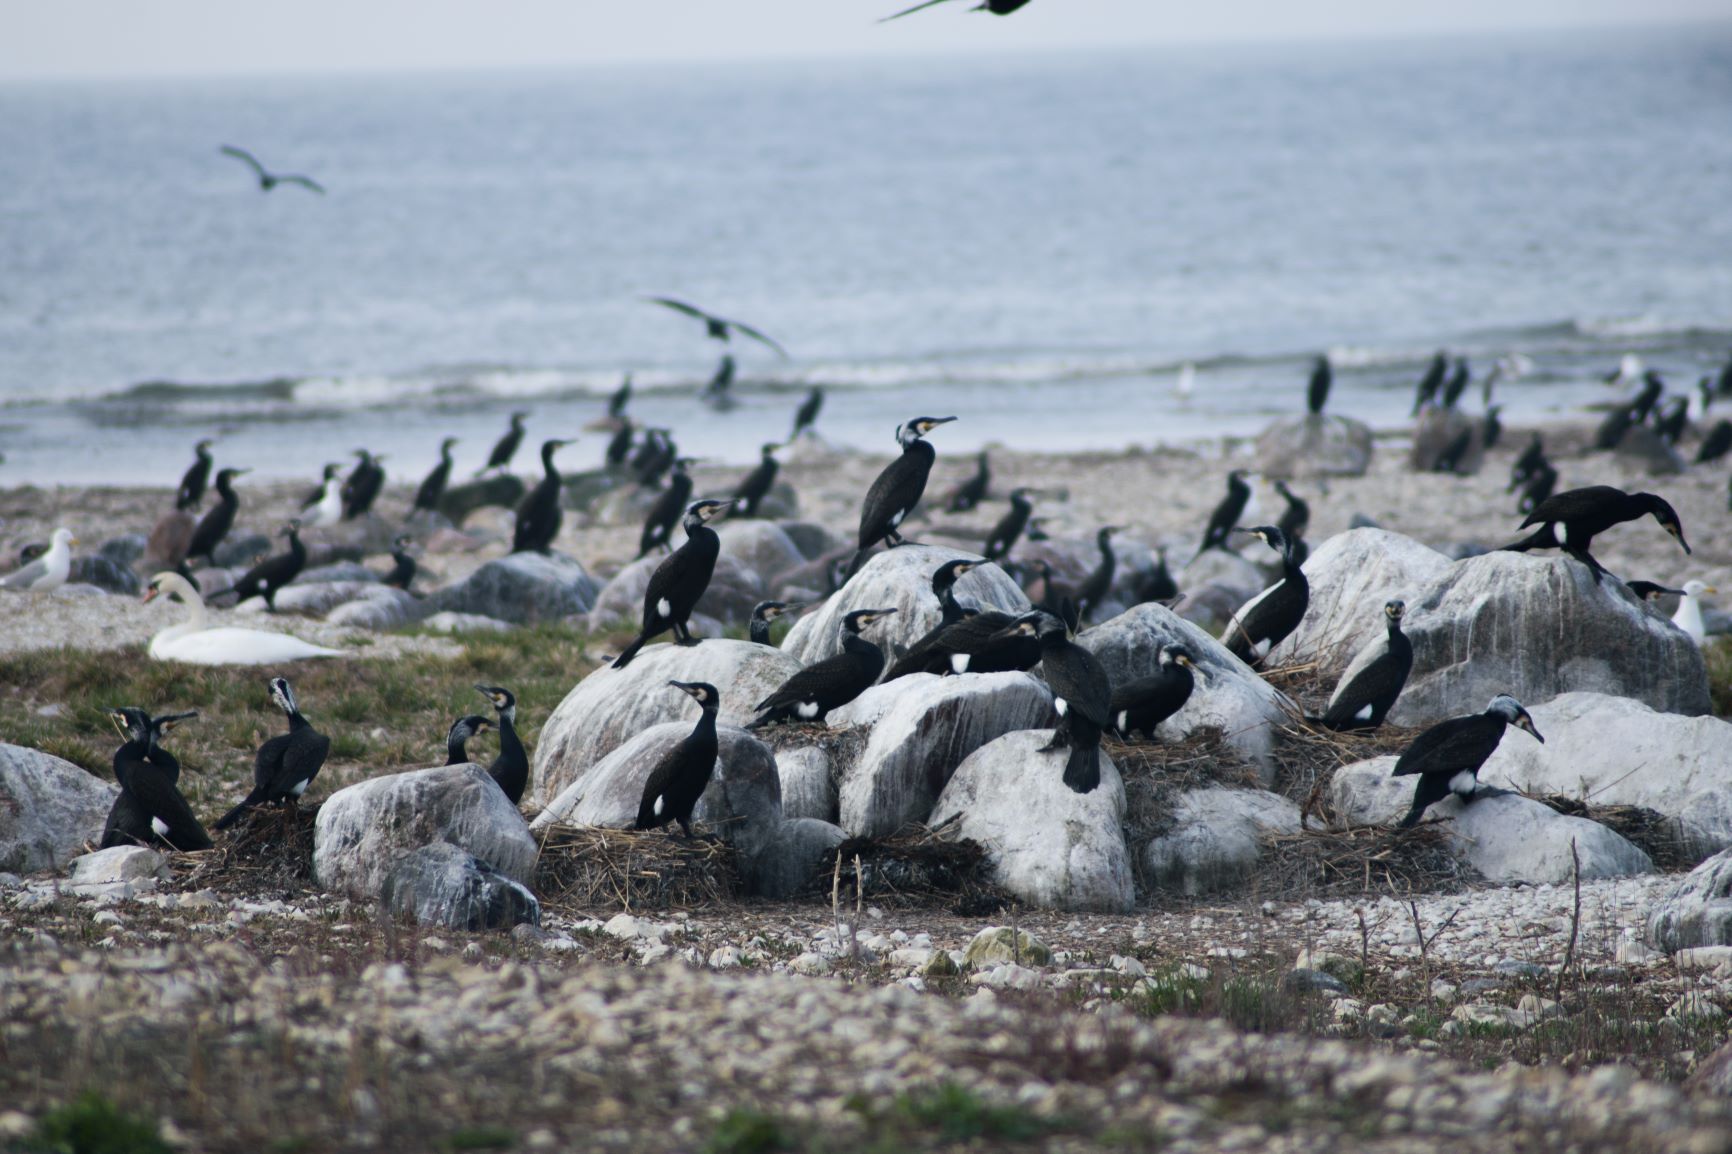 Agenția de Mediu permite ungerea ouălor de cormoran cu ulei și descurajarea păsărilor